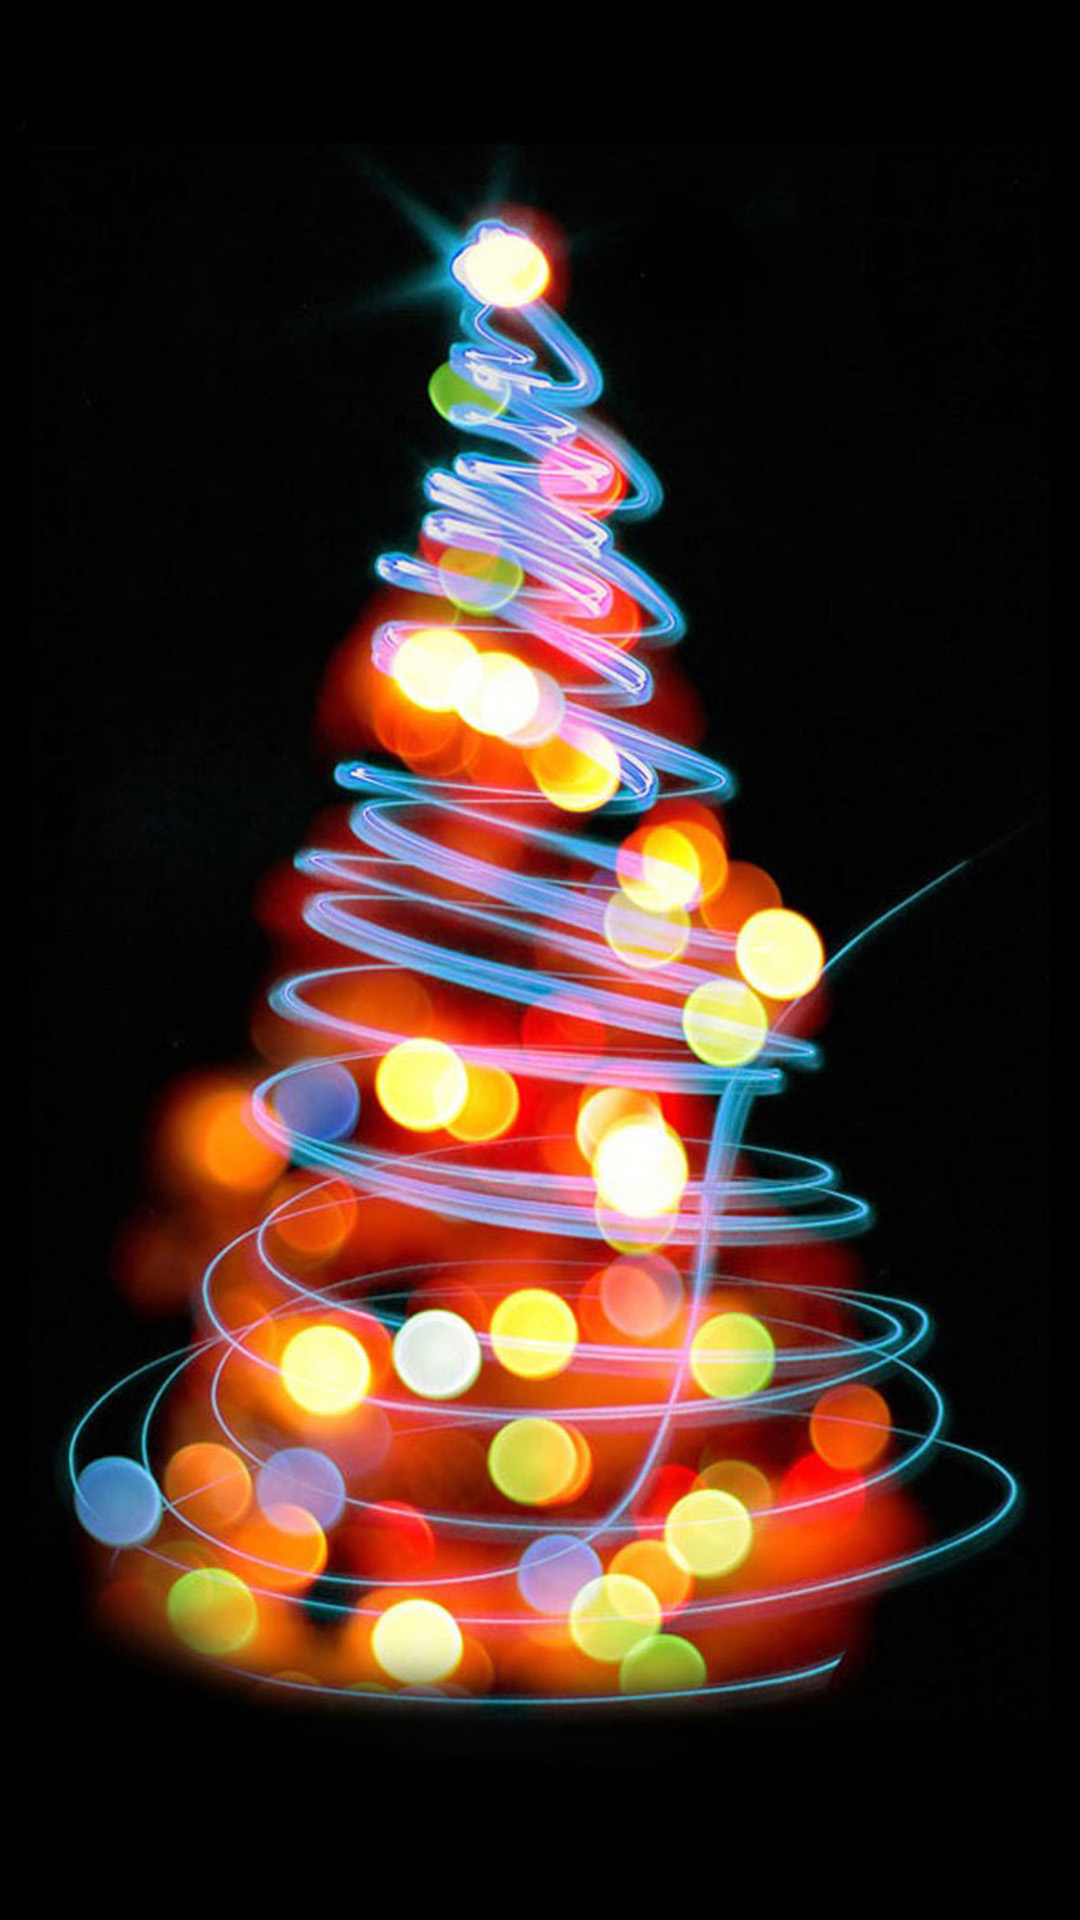 크리스마스 배경 hd 아이폰,크리스마스 트리,크리스마스 장식,크리스마스 조명,나무,빛